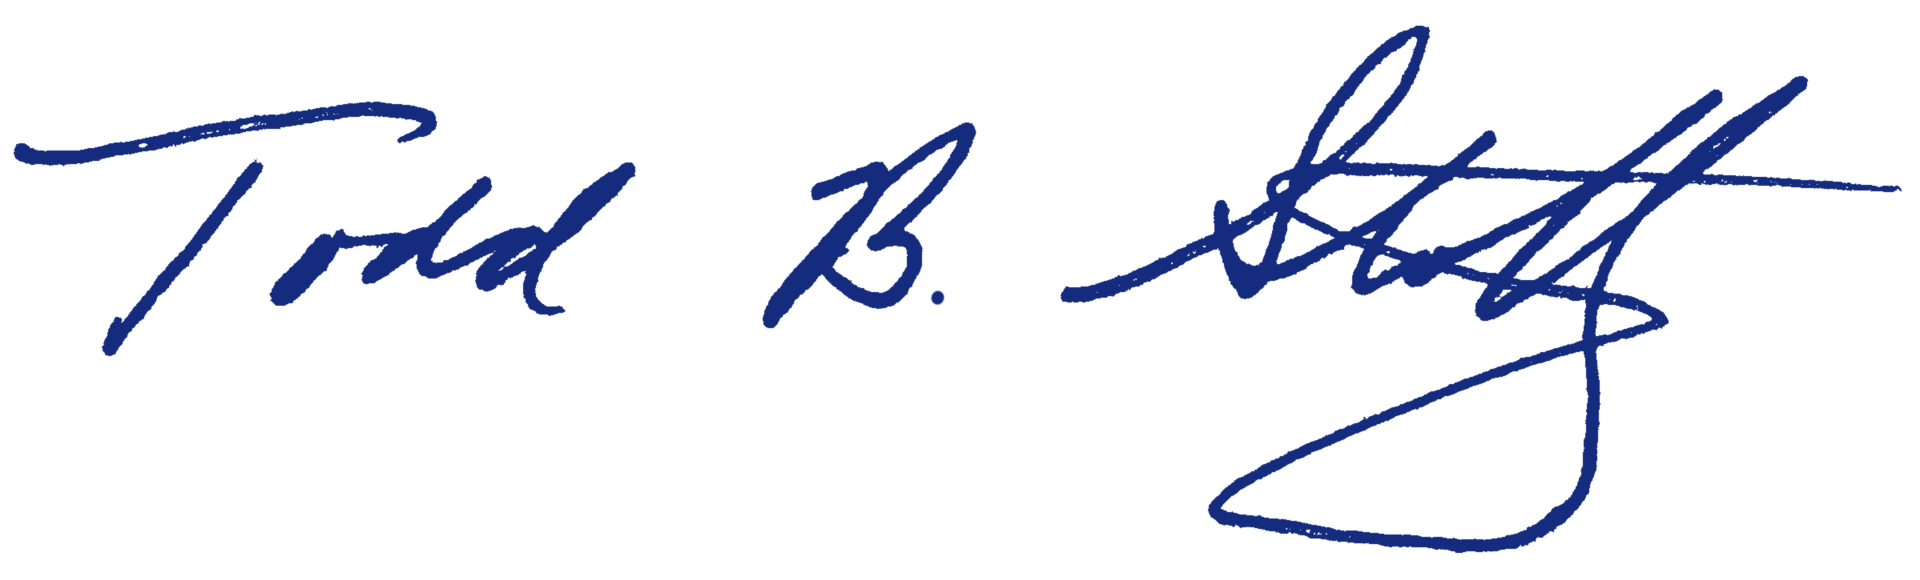 stoltz signature